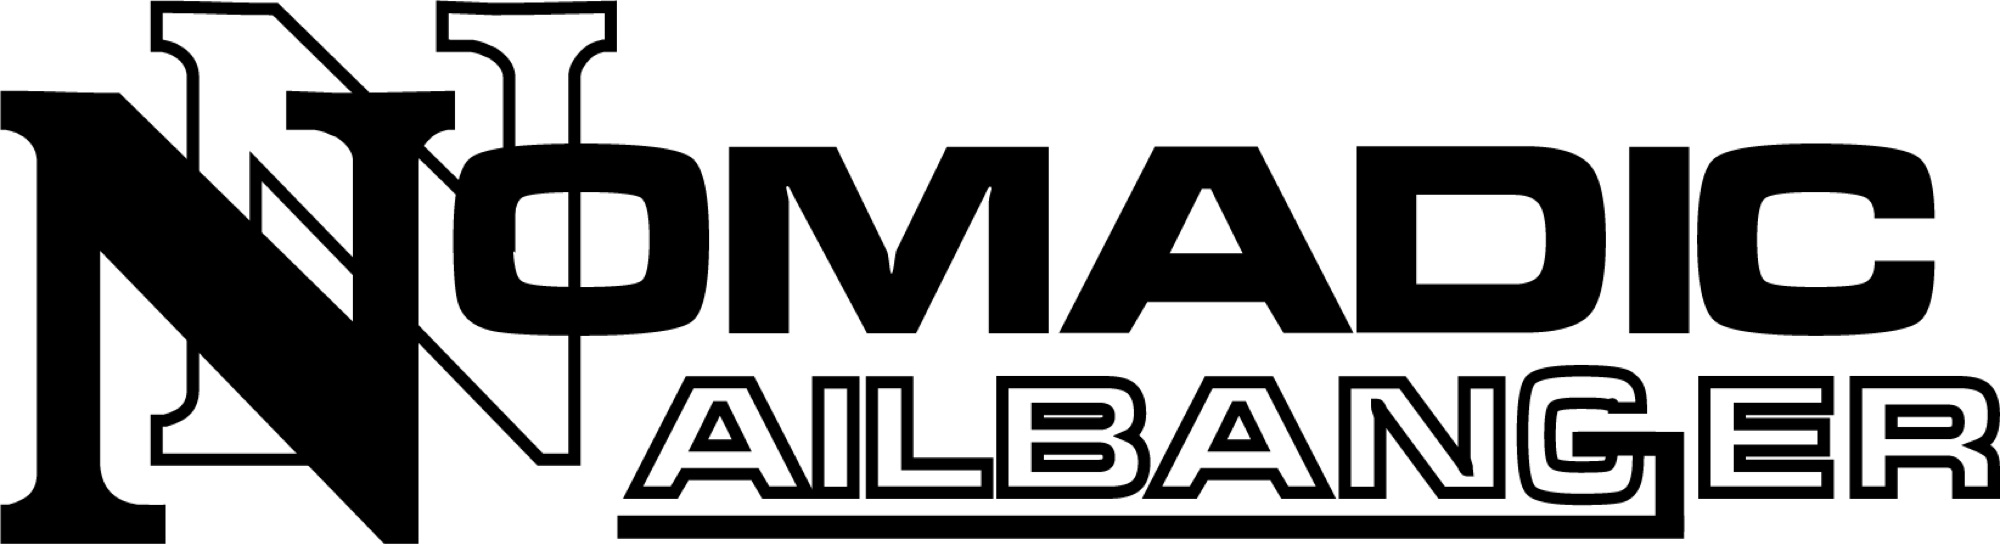 Nomadic Nailbanger, LLC Logo